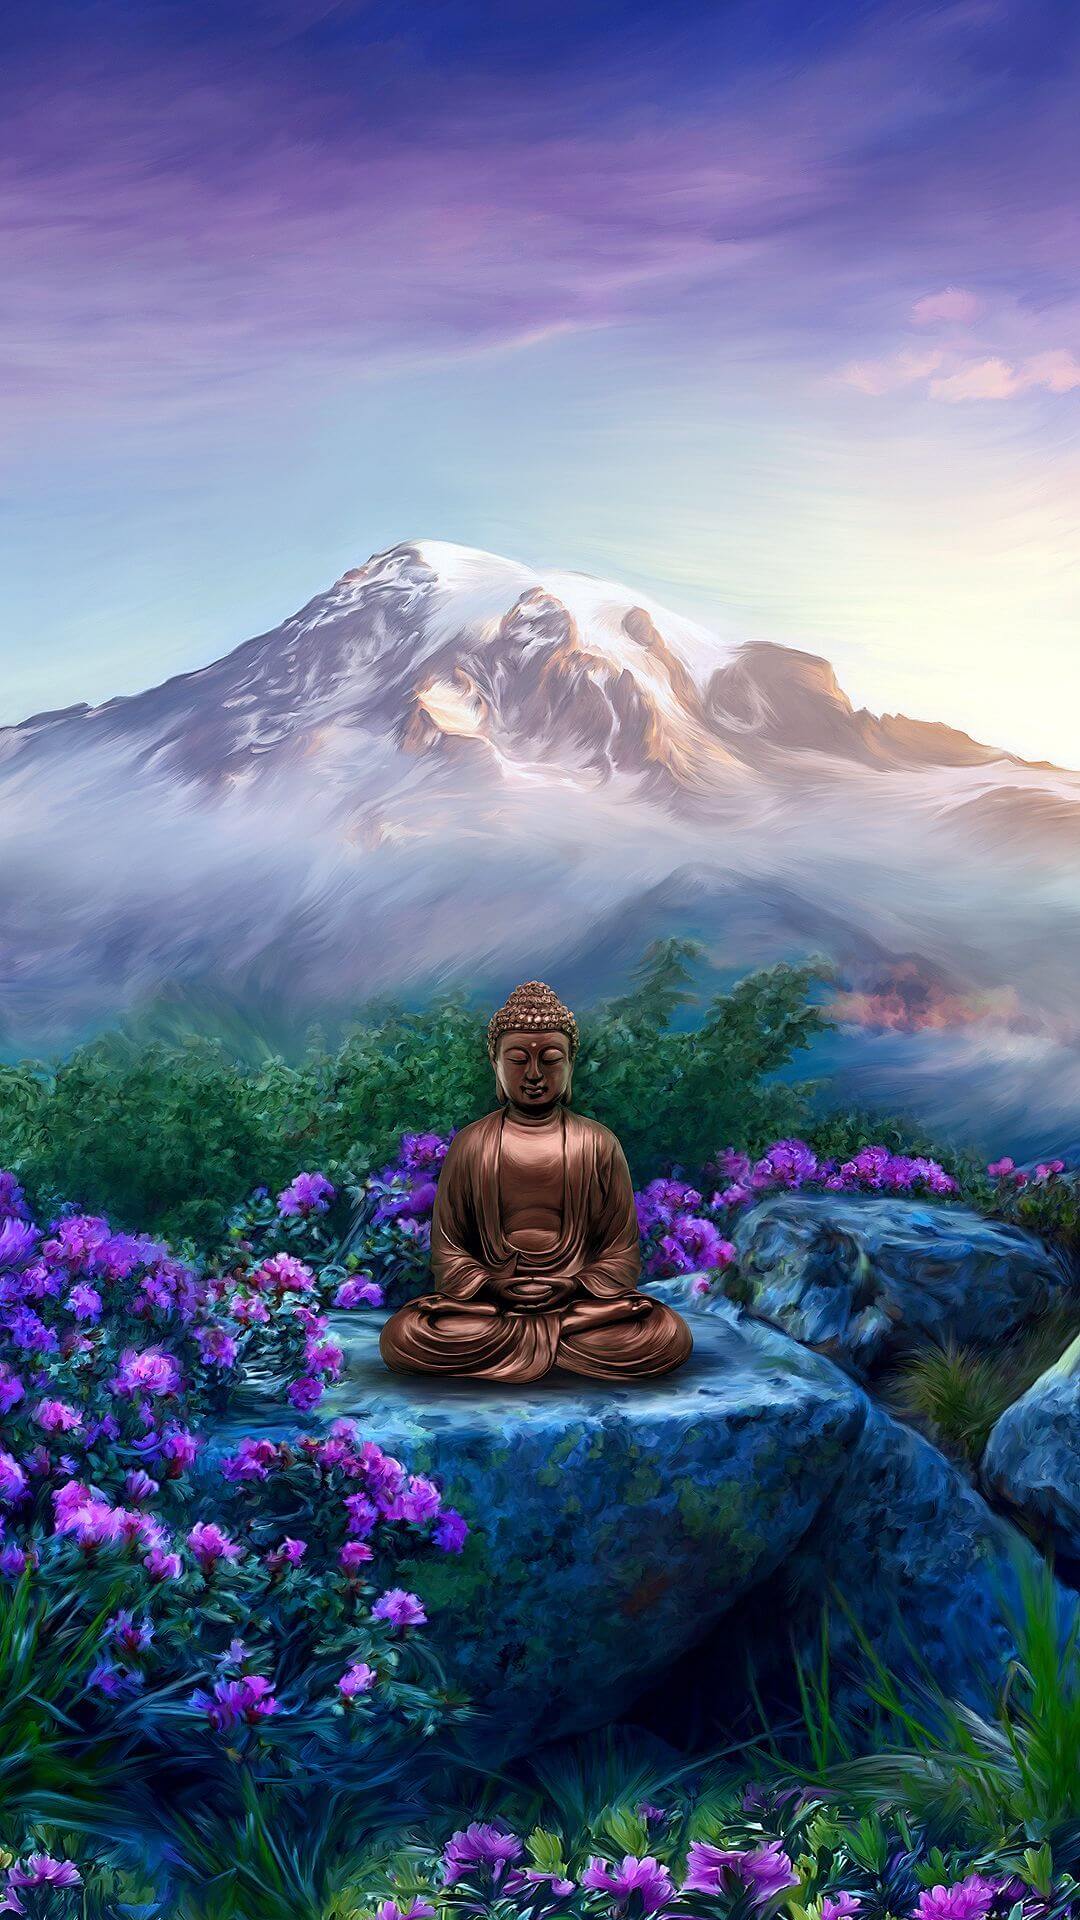 Hình ảnh Phật mang đến cho chúng ta nhiều cảm xúc, từ sự bình an đến sự may mắn và trọn vẹn. Hãy cùng chiêm ngưỡng những hình ảnh phật đẹp và cảm nhận đầy đủ tình yêu thương và giác ngộ của Đức Phật.